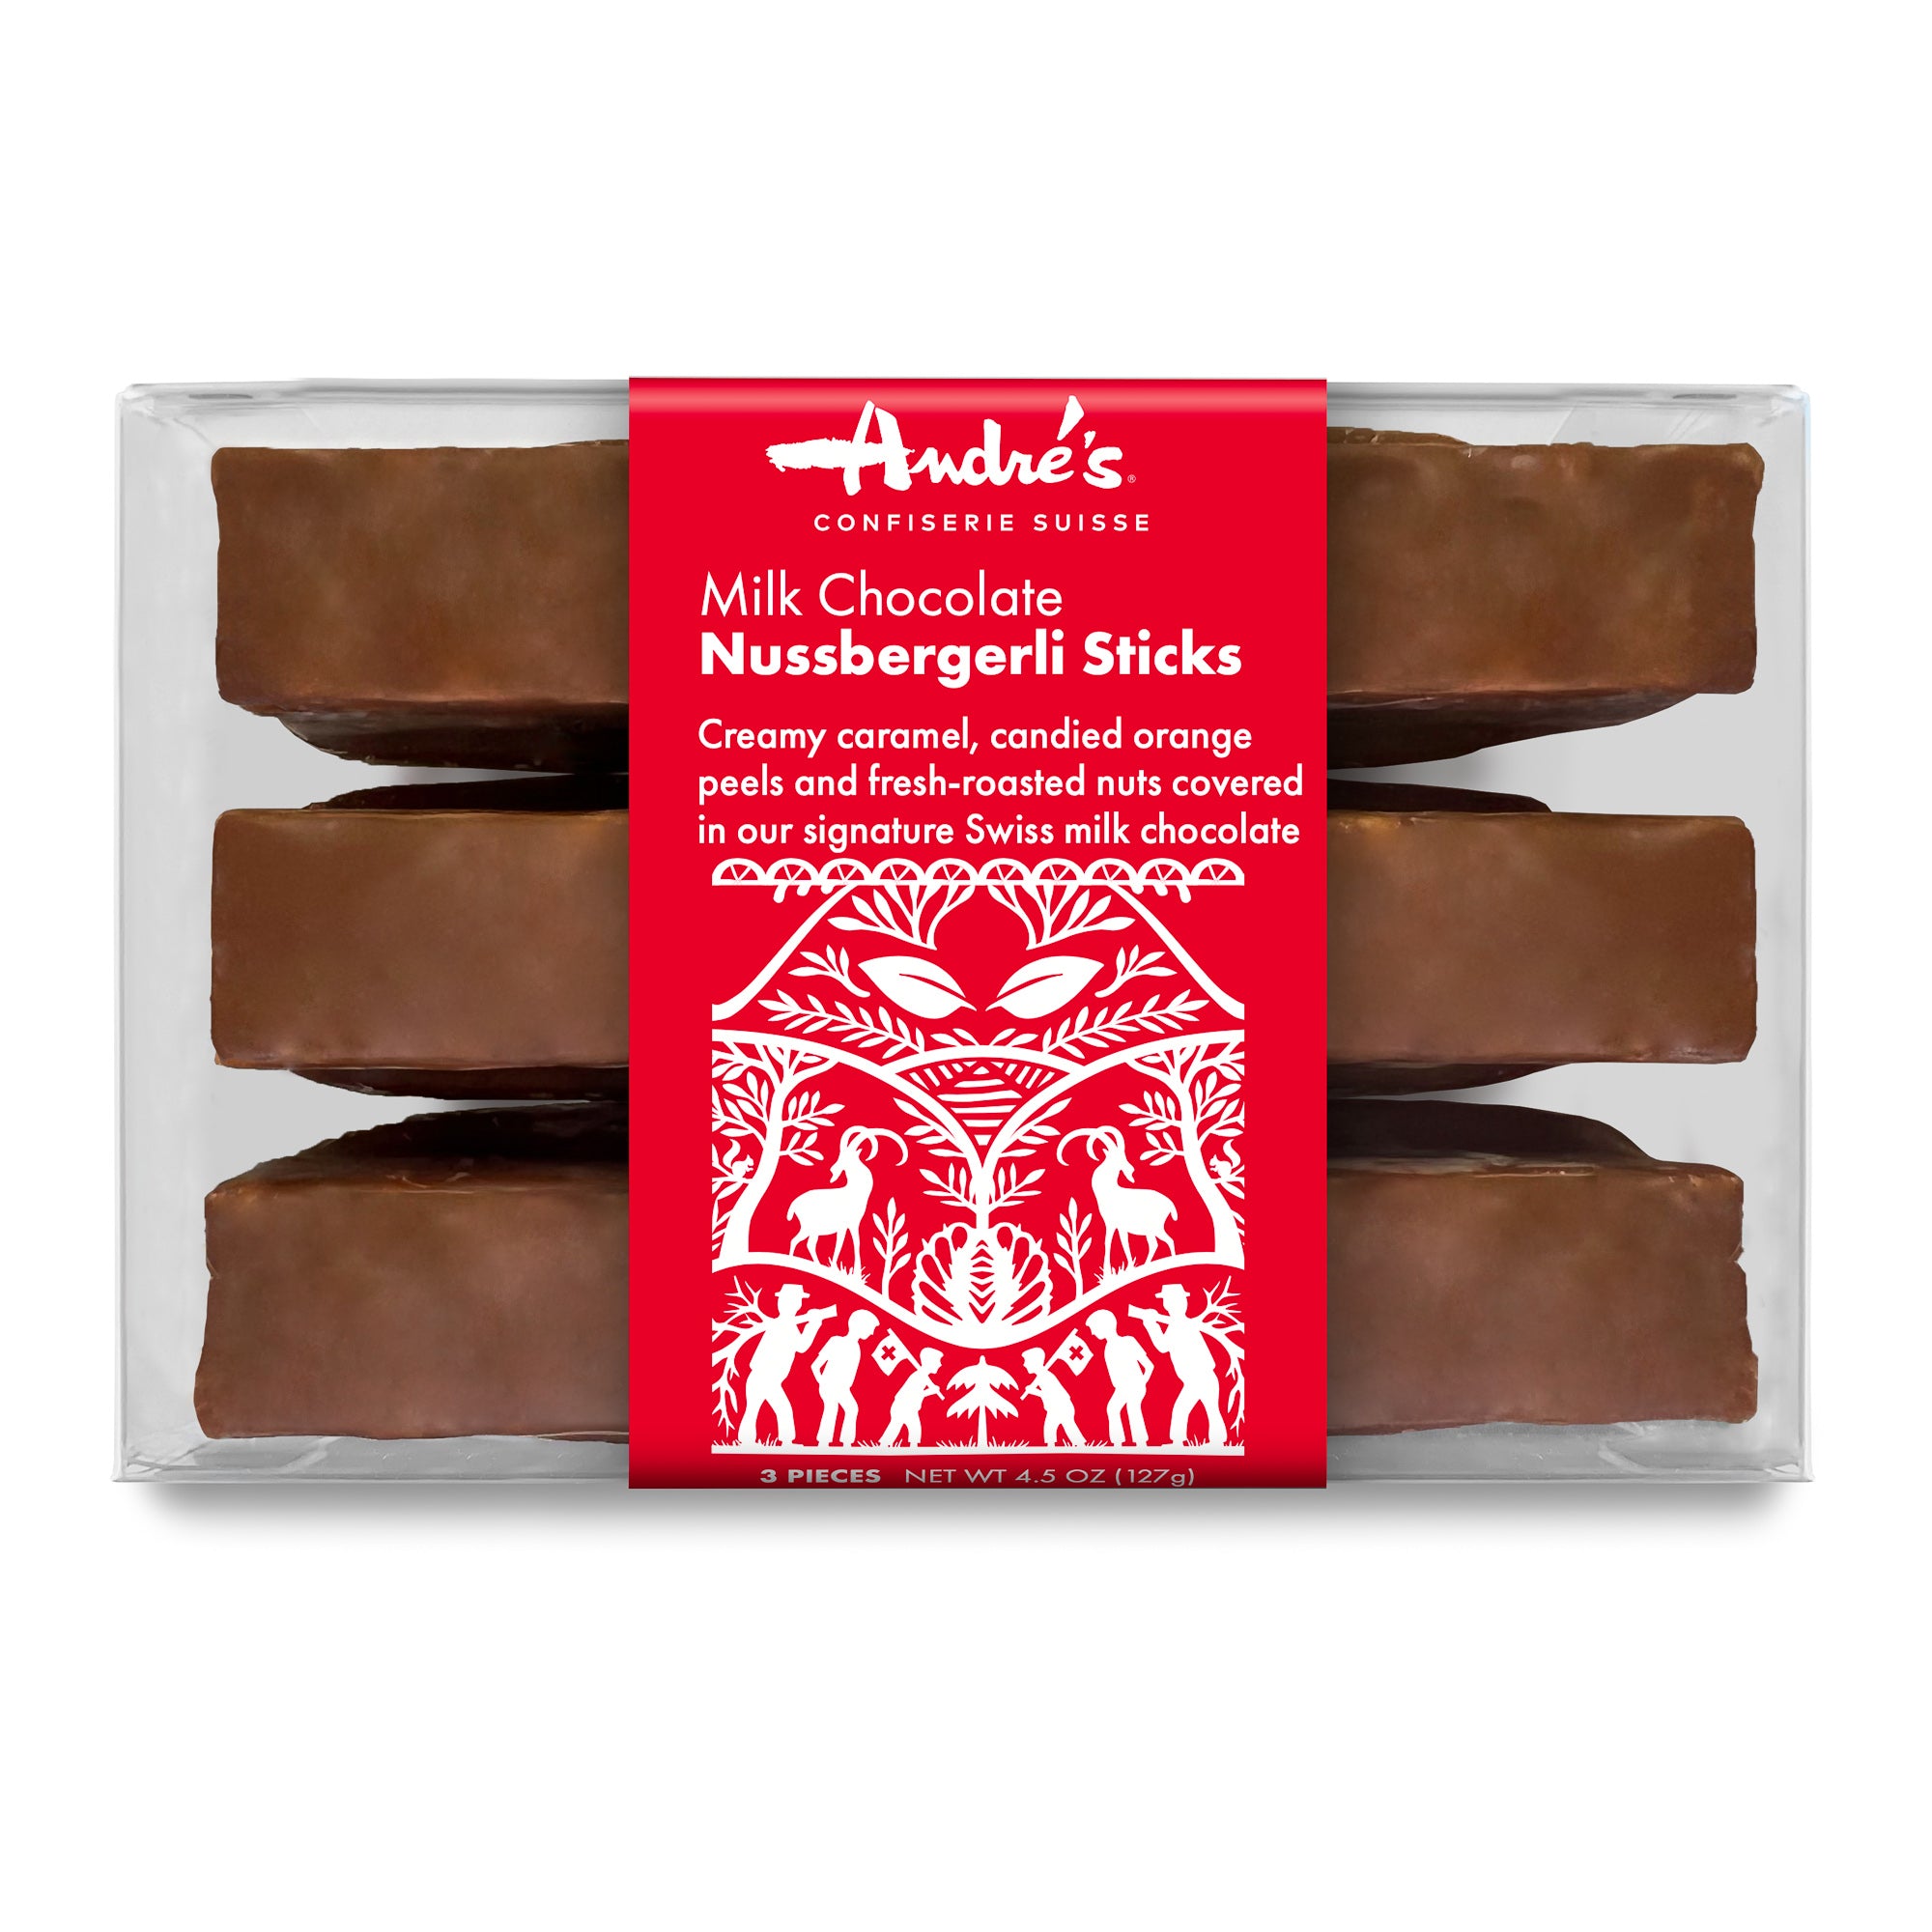 Nussbergerli Sticks